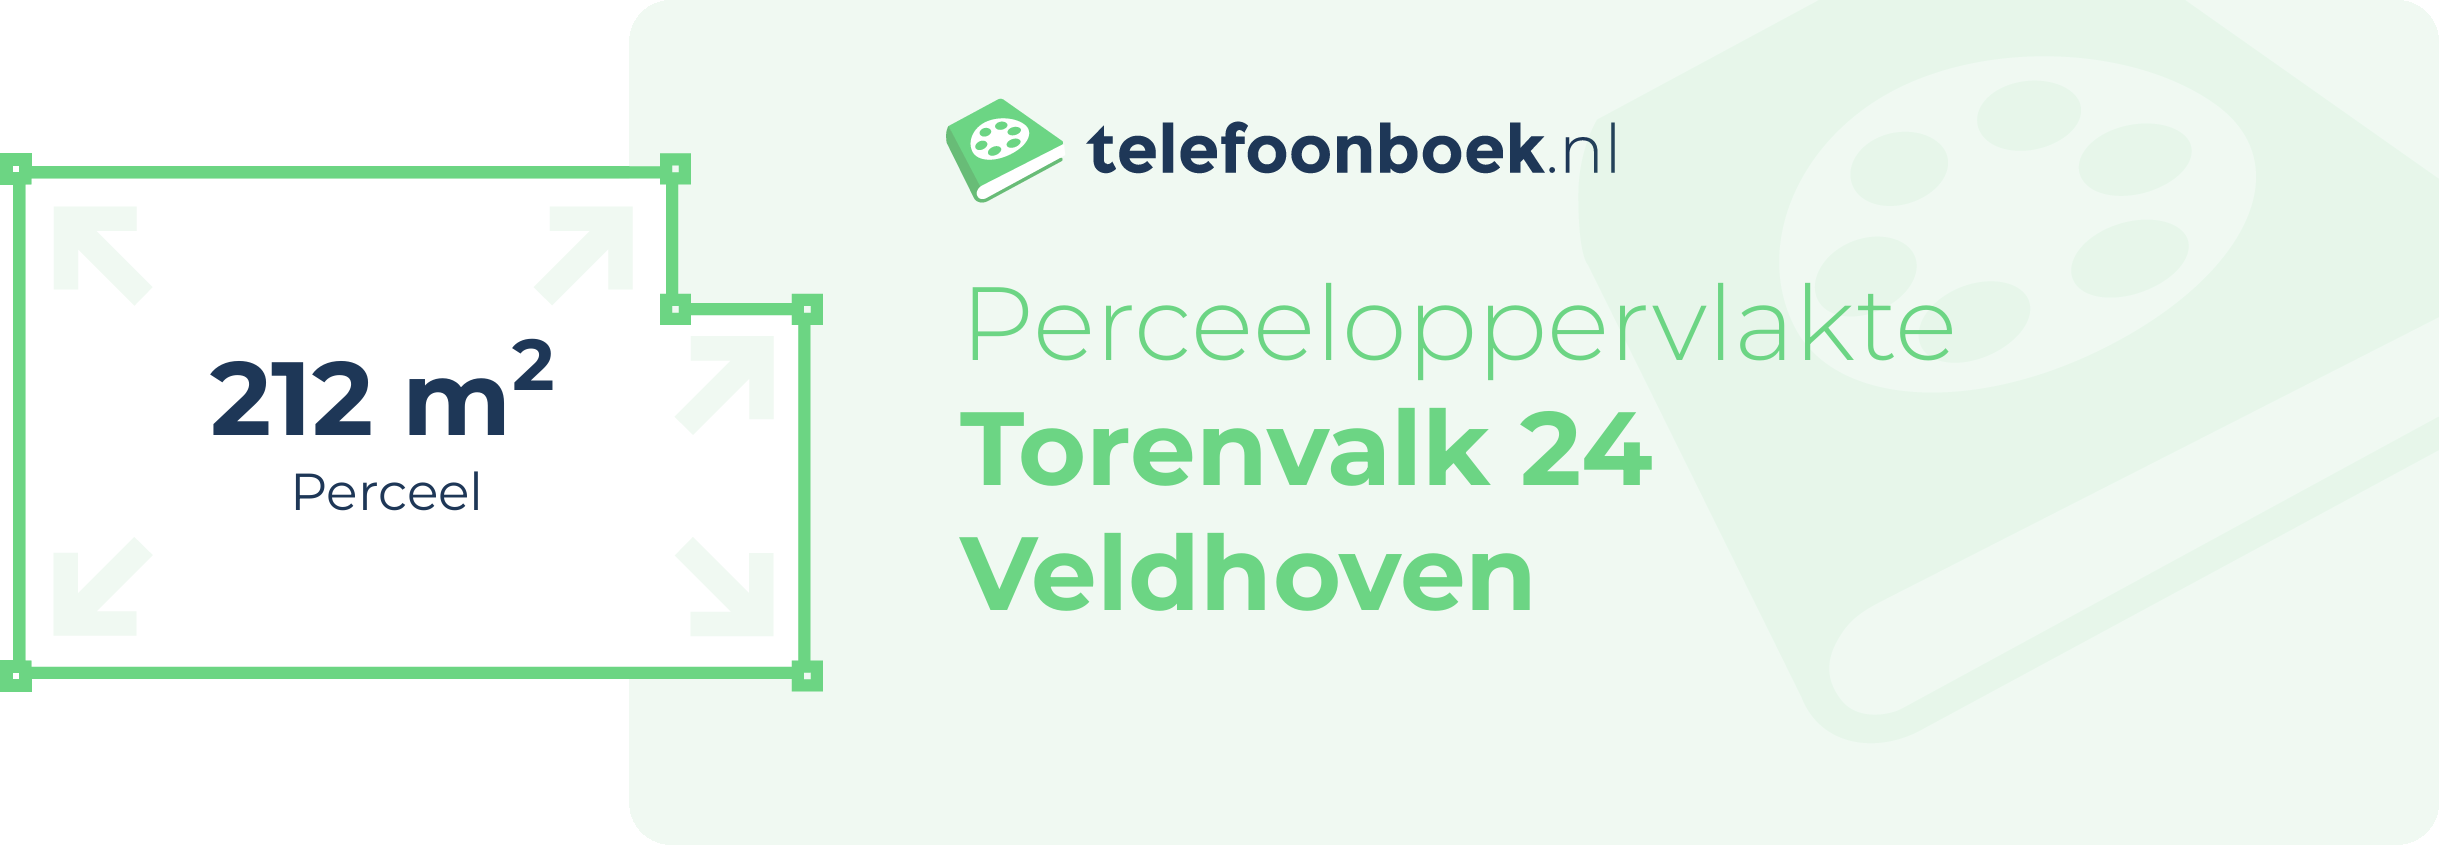 Perceeloppervlakte Torenvalk 24 Veldhoven